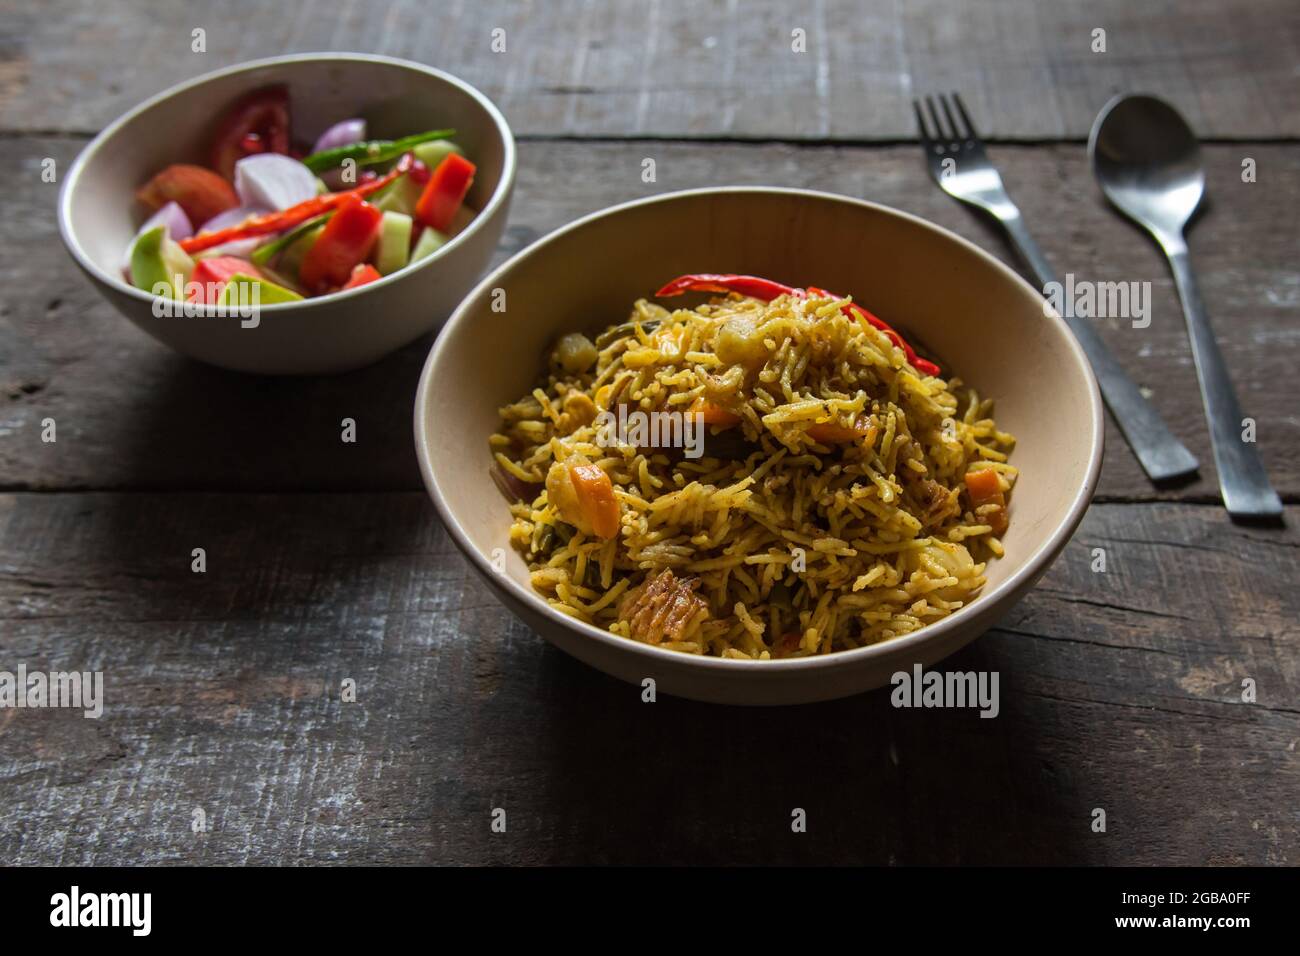 Gemüse tawa Pulao oder Pilau ist ein indisches Essen, das aus Basmati-Reis, Gemüse und einer Mischung aus indischen Gewürzen zubereitet wird. Nahaufnahme. Stockfoto